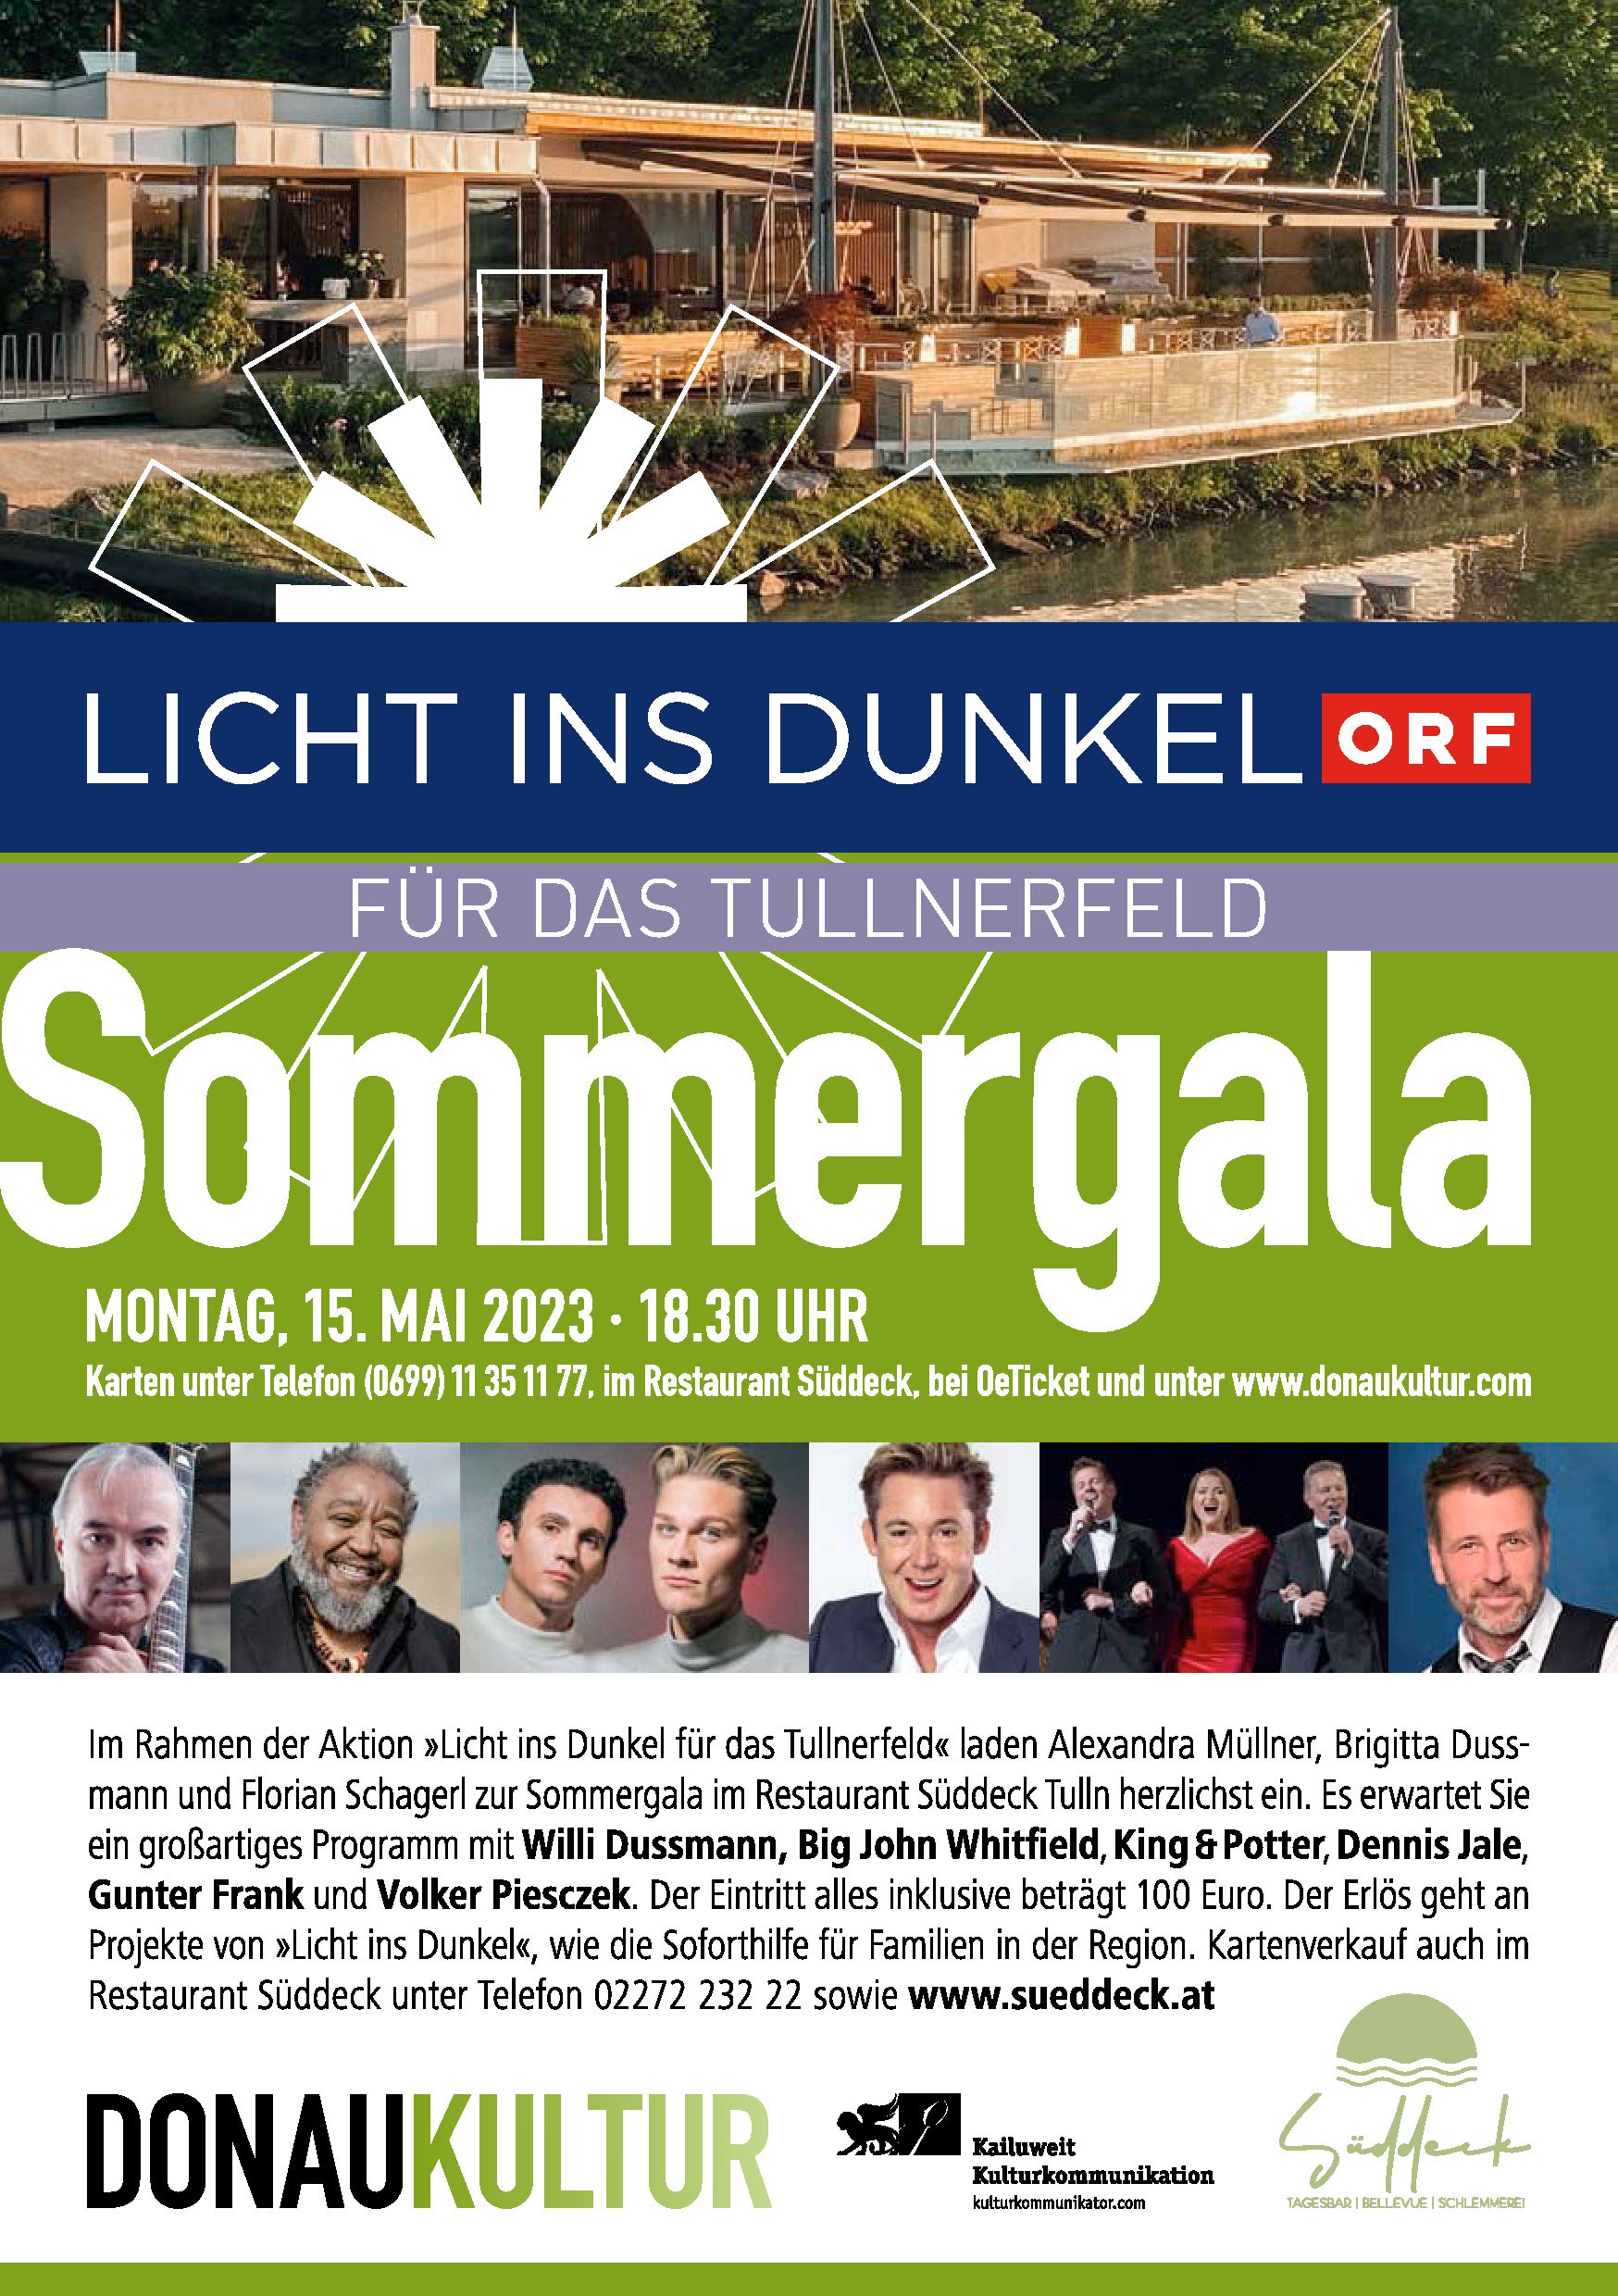 Licht ins Dunkel für das Tullnerfeld – <strong>Sommergala im Restaurant Süddeck am Montag, 15. Mai 2023</strong>